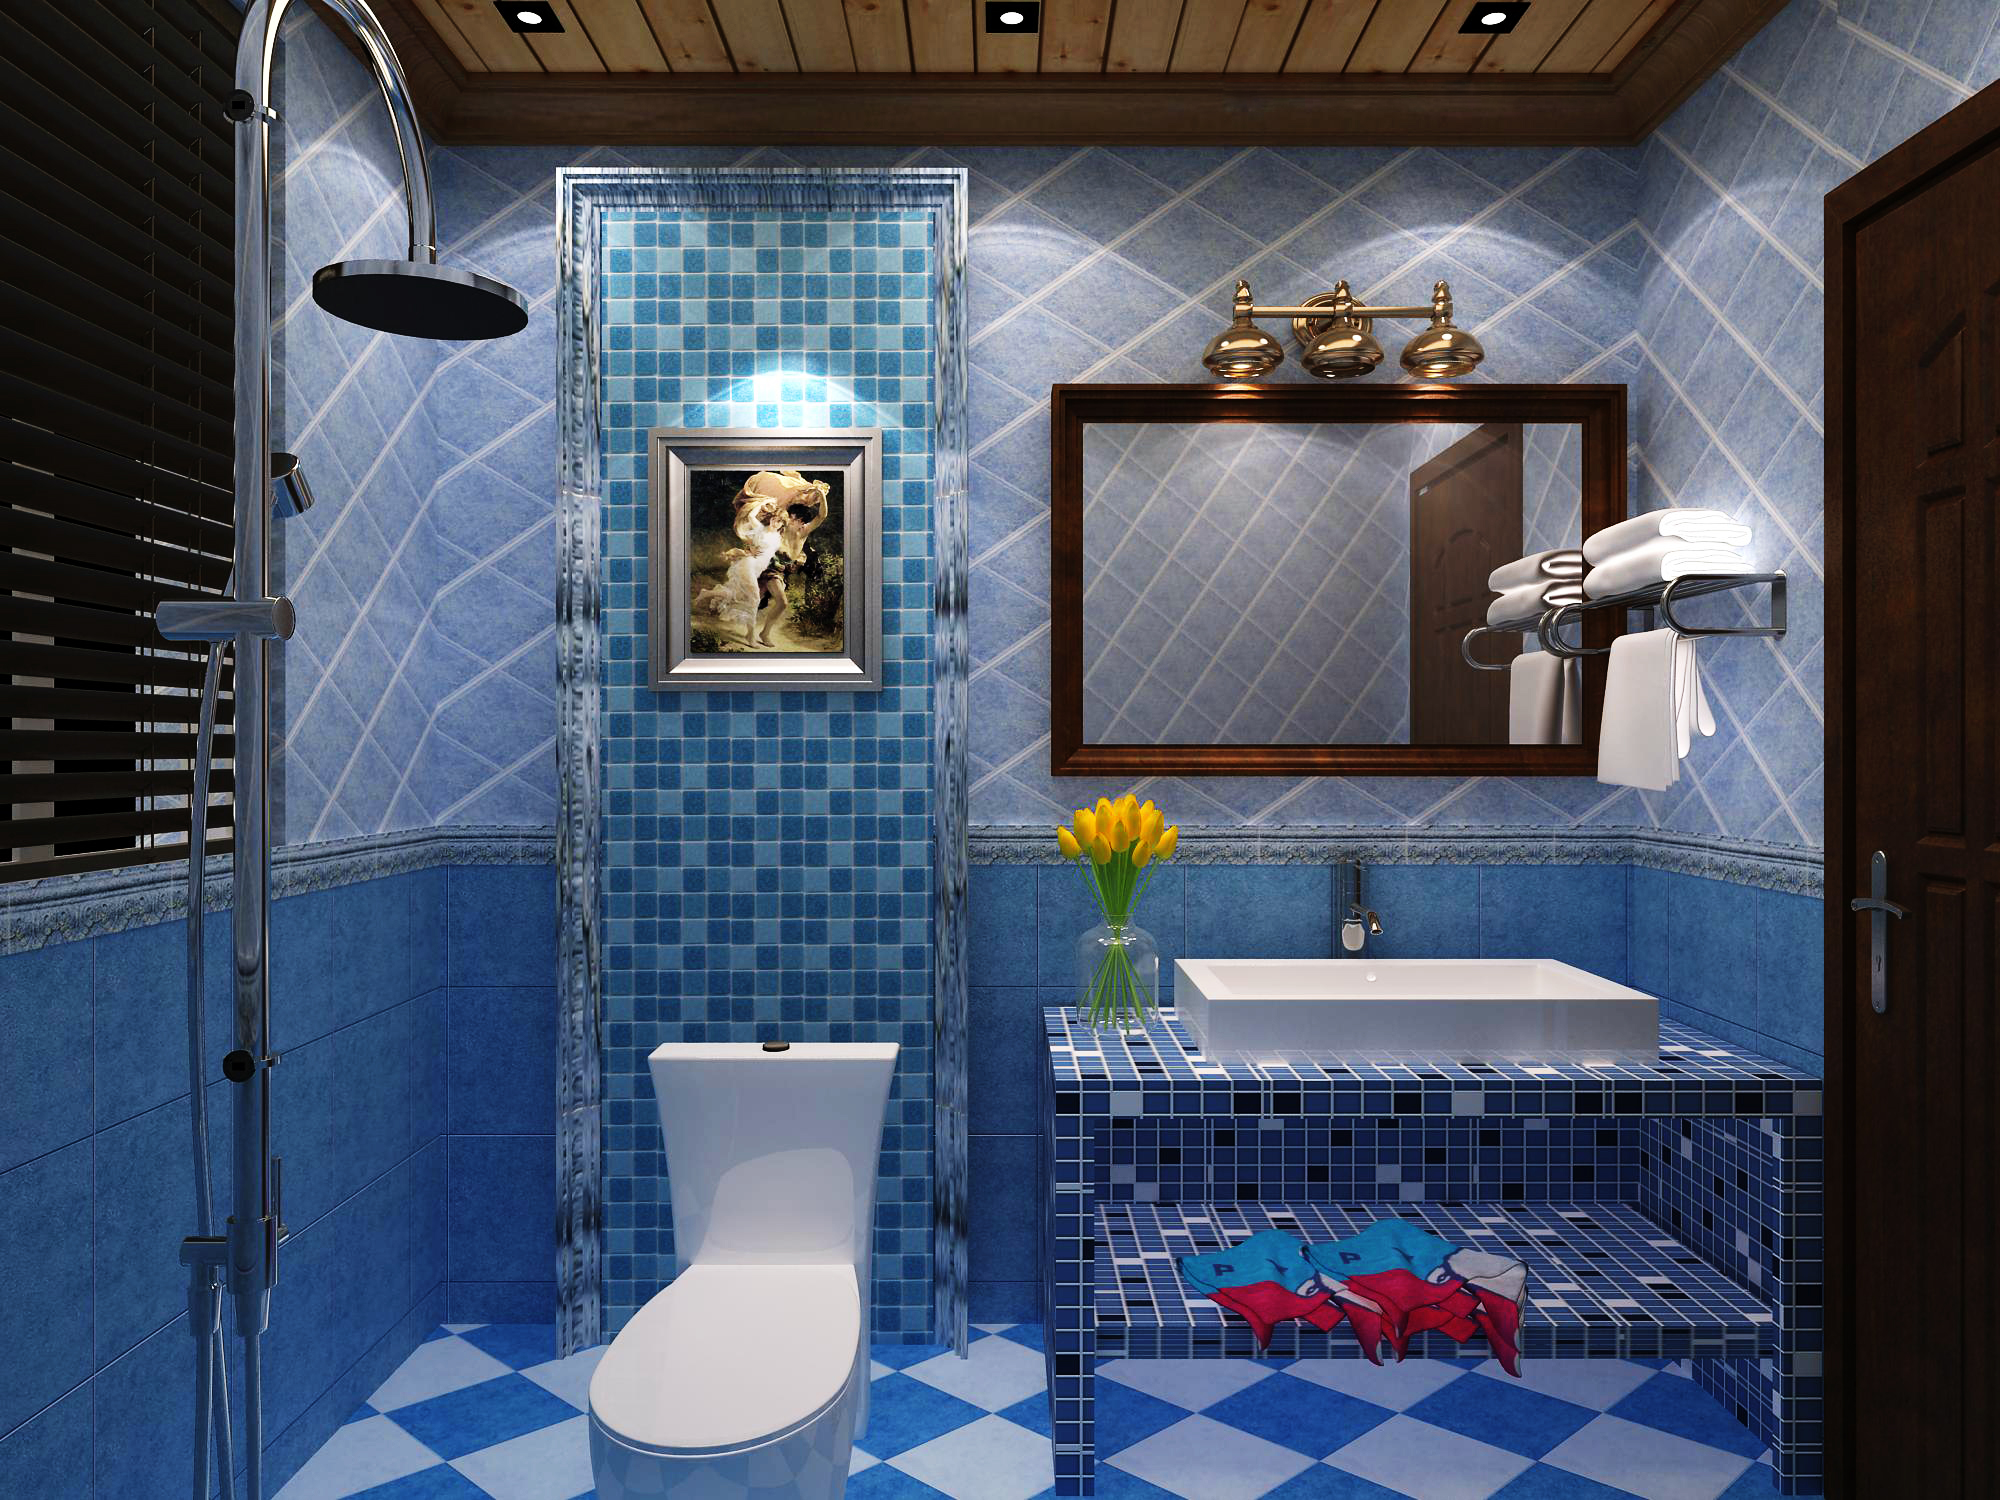 简约 欧式 别墅 二居 卫生间图片来自设计精英在美式乡村的分享